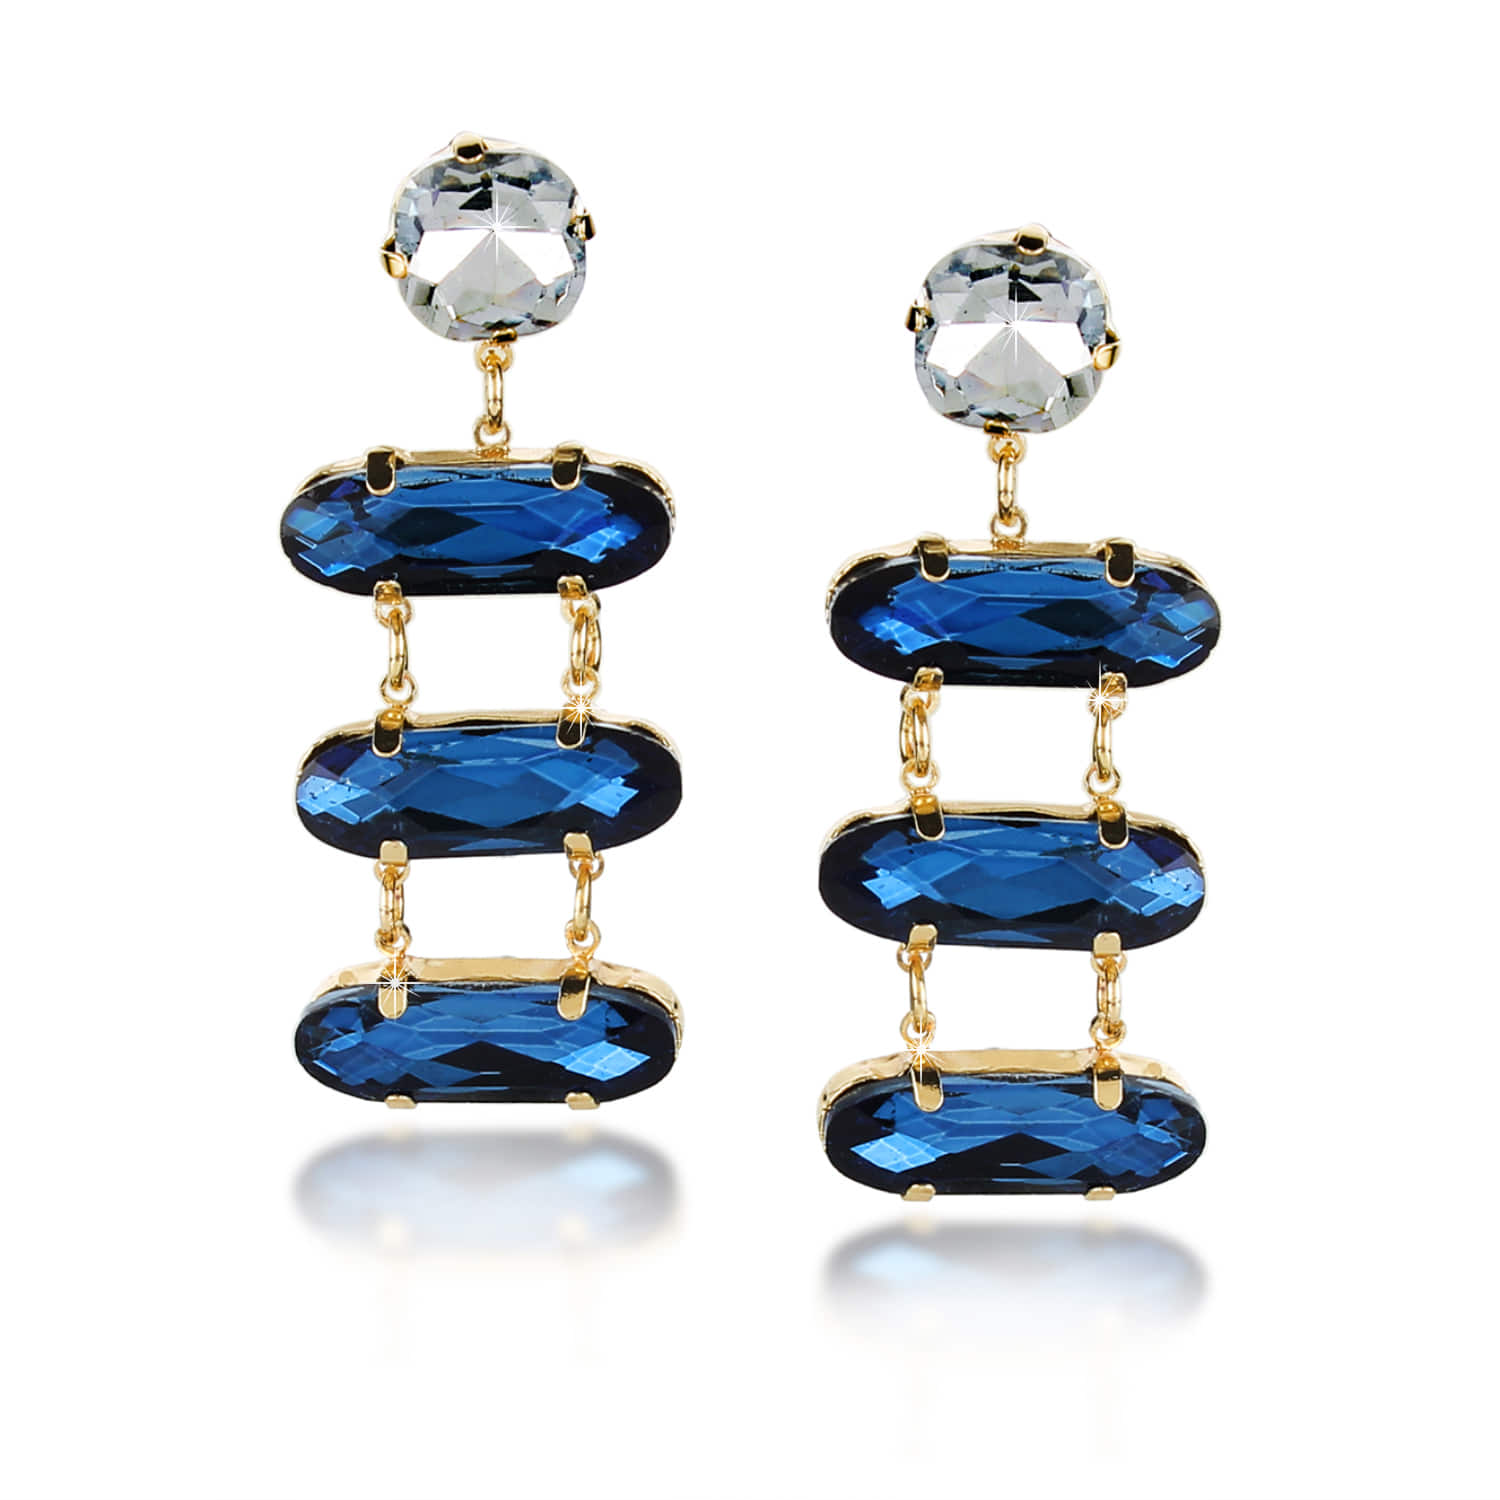 Rhea Earrings  Buy Rhea Classic Midnight Blue Silver Crystal Double Hoop  Earrings Online  Nykaa Fashion